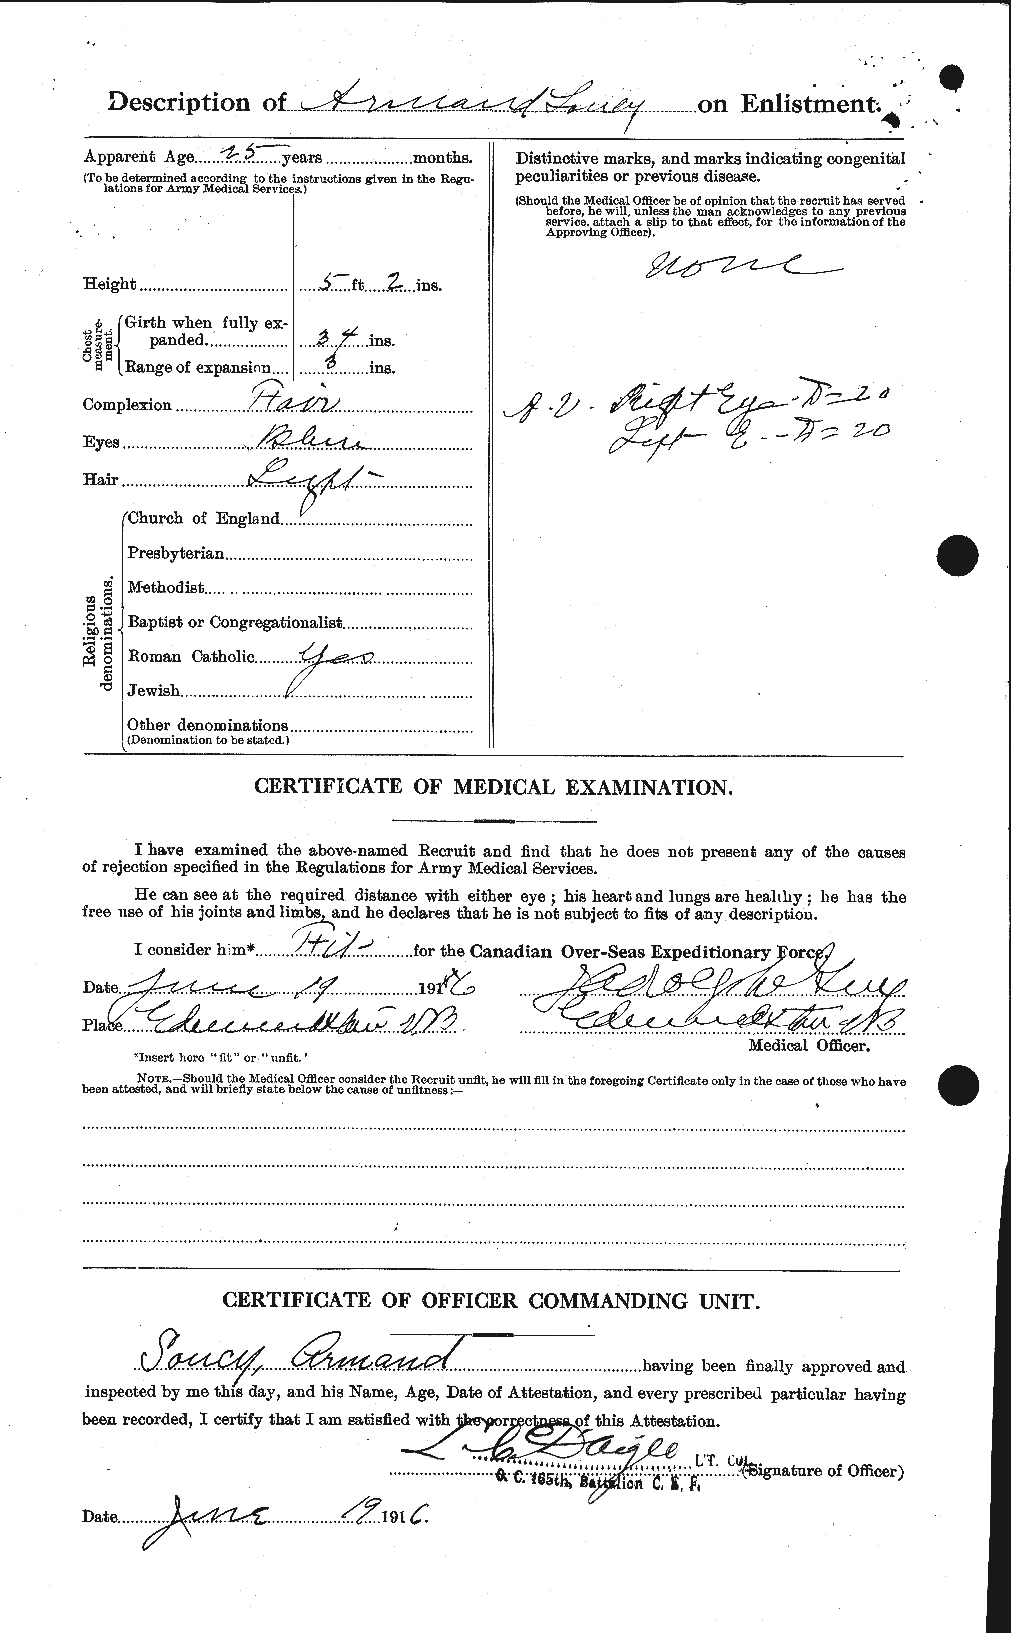 Dossiers du Personnel de la Première Guerre mondiale - CEC 109576b